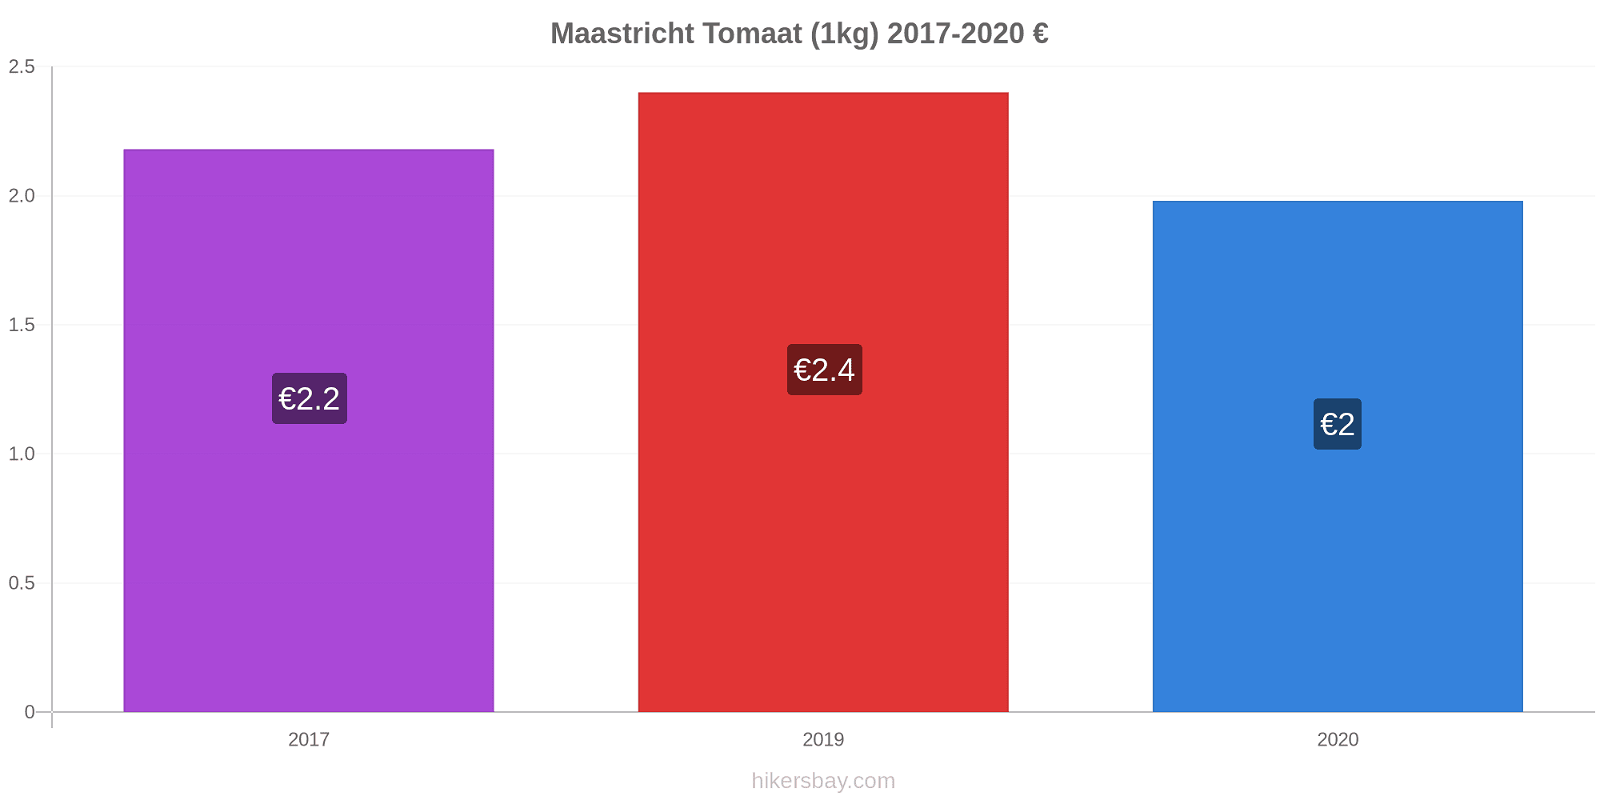 Maastricht prijswijzigingen Tomaat (1kg) hikersbay.com